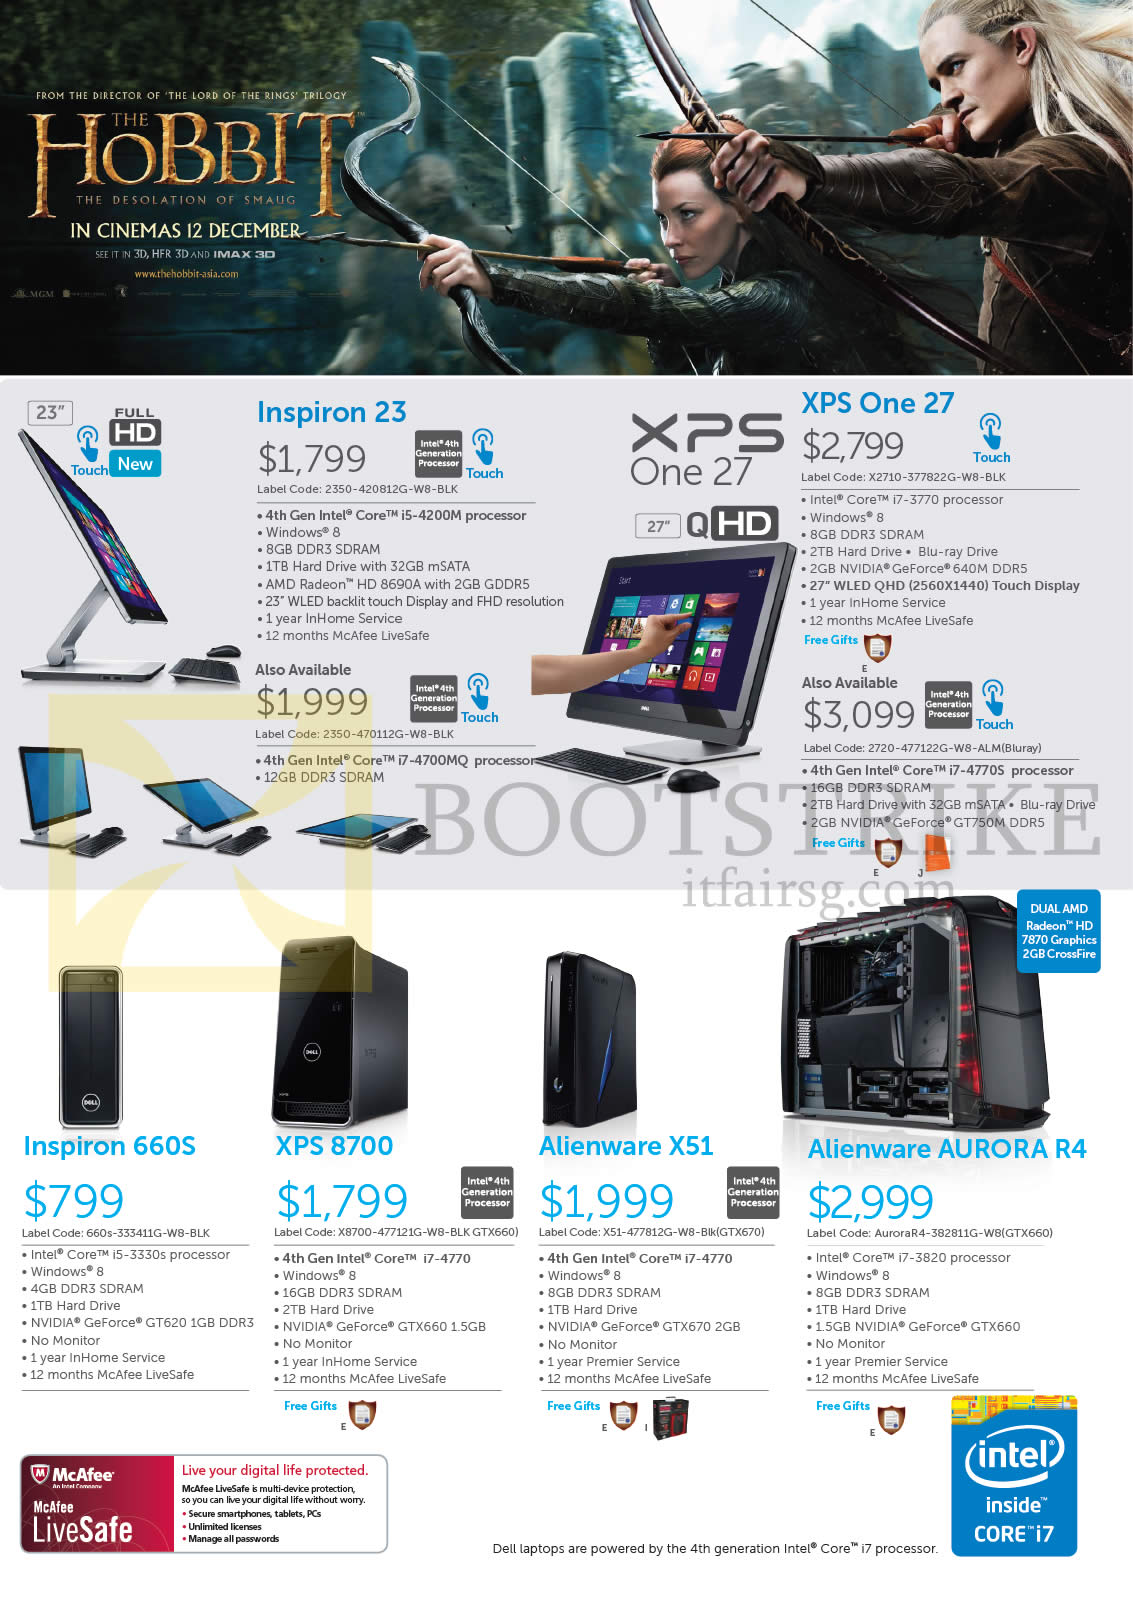 SITEX 2013 price list image brochure of Dell Desktop PCs, AIO Desktop PCs Inspiron 23, 660S, XPS One 27, 8700, Alienware X51, Aurora R4